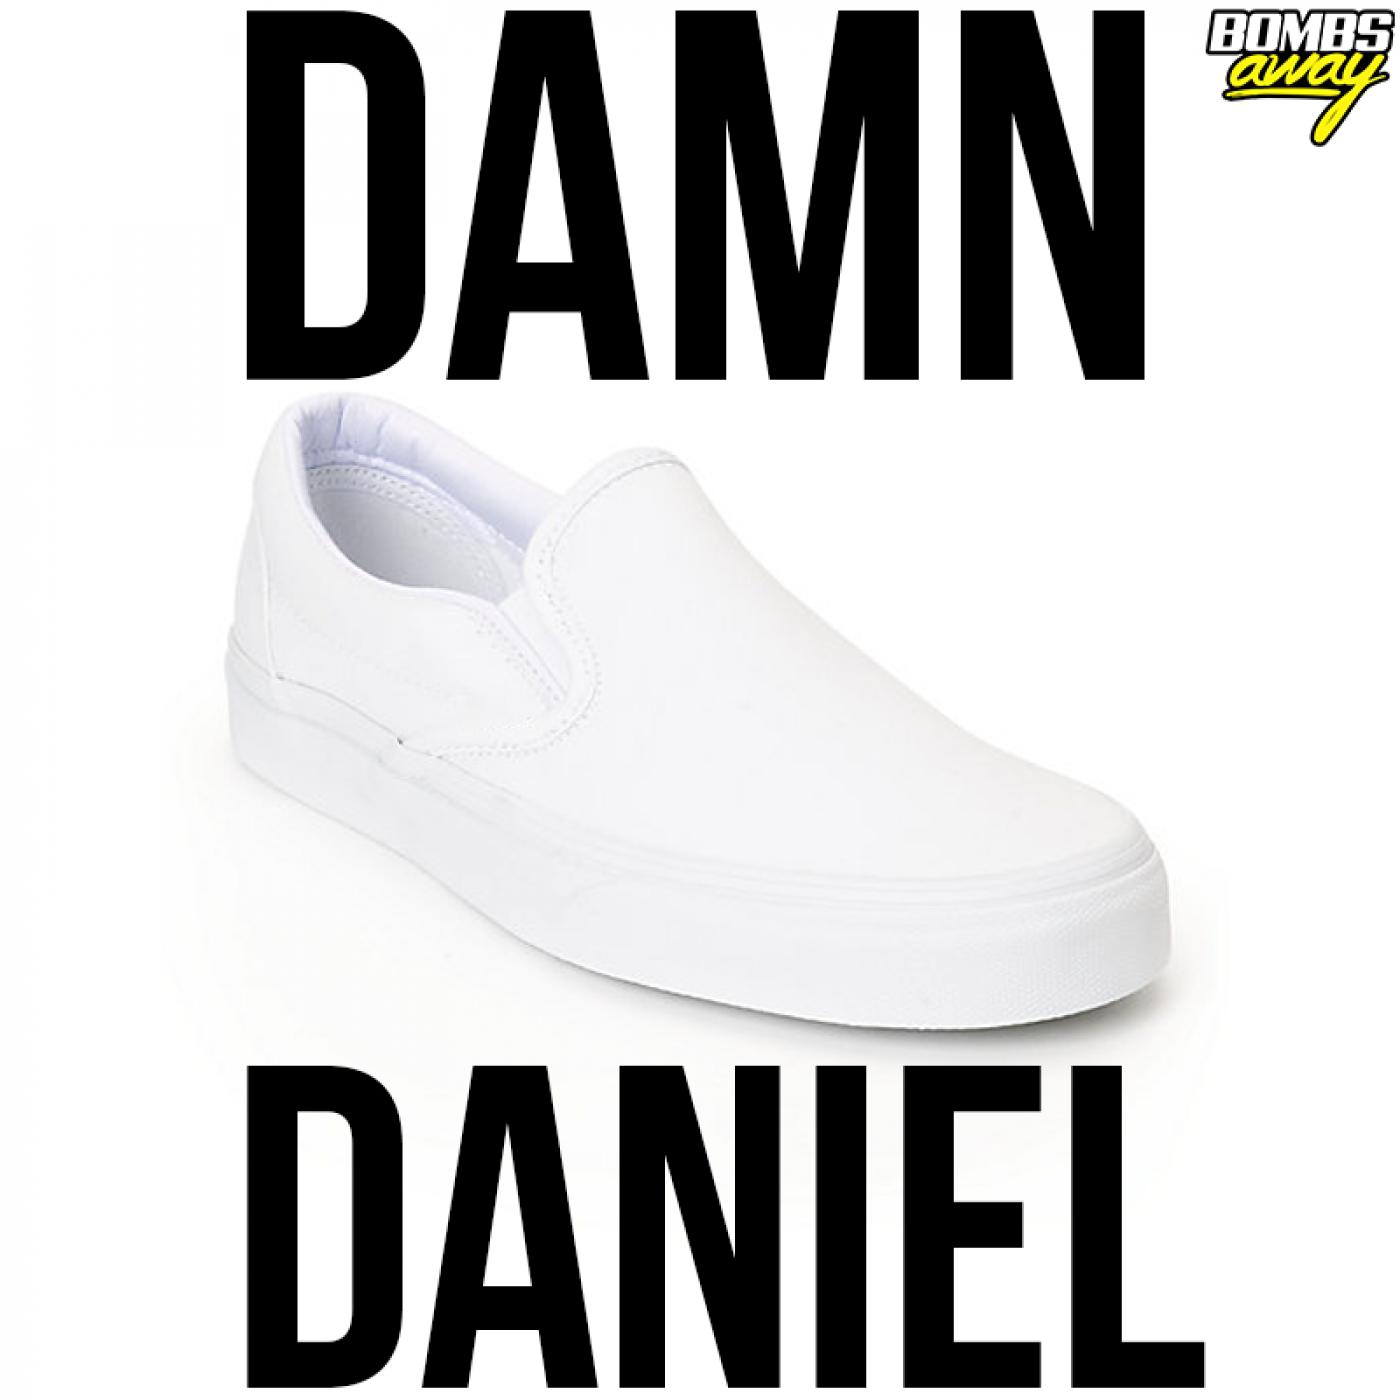 Damn Daniel (Extended Mix)